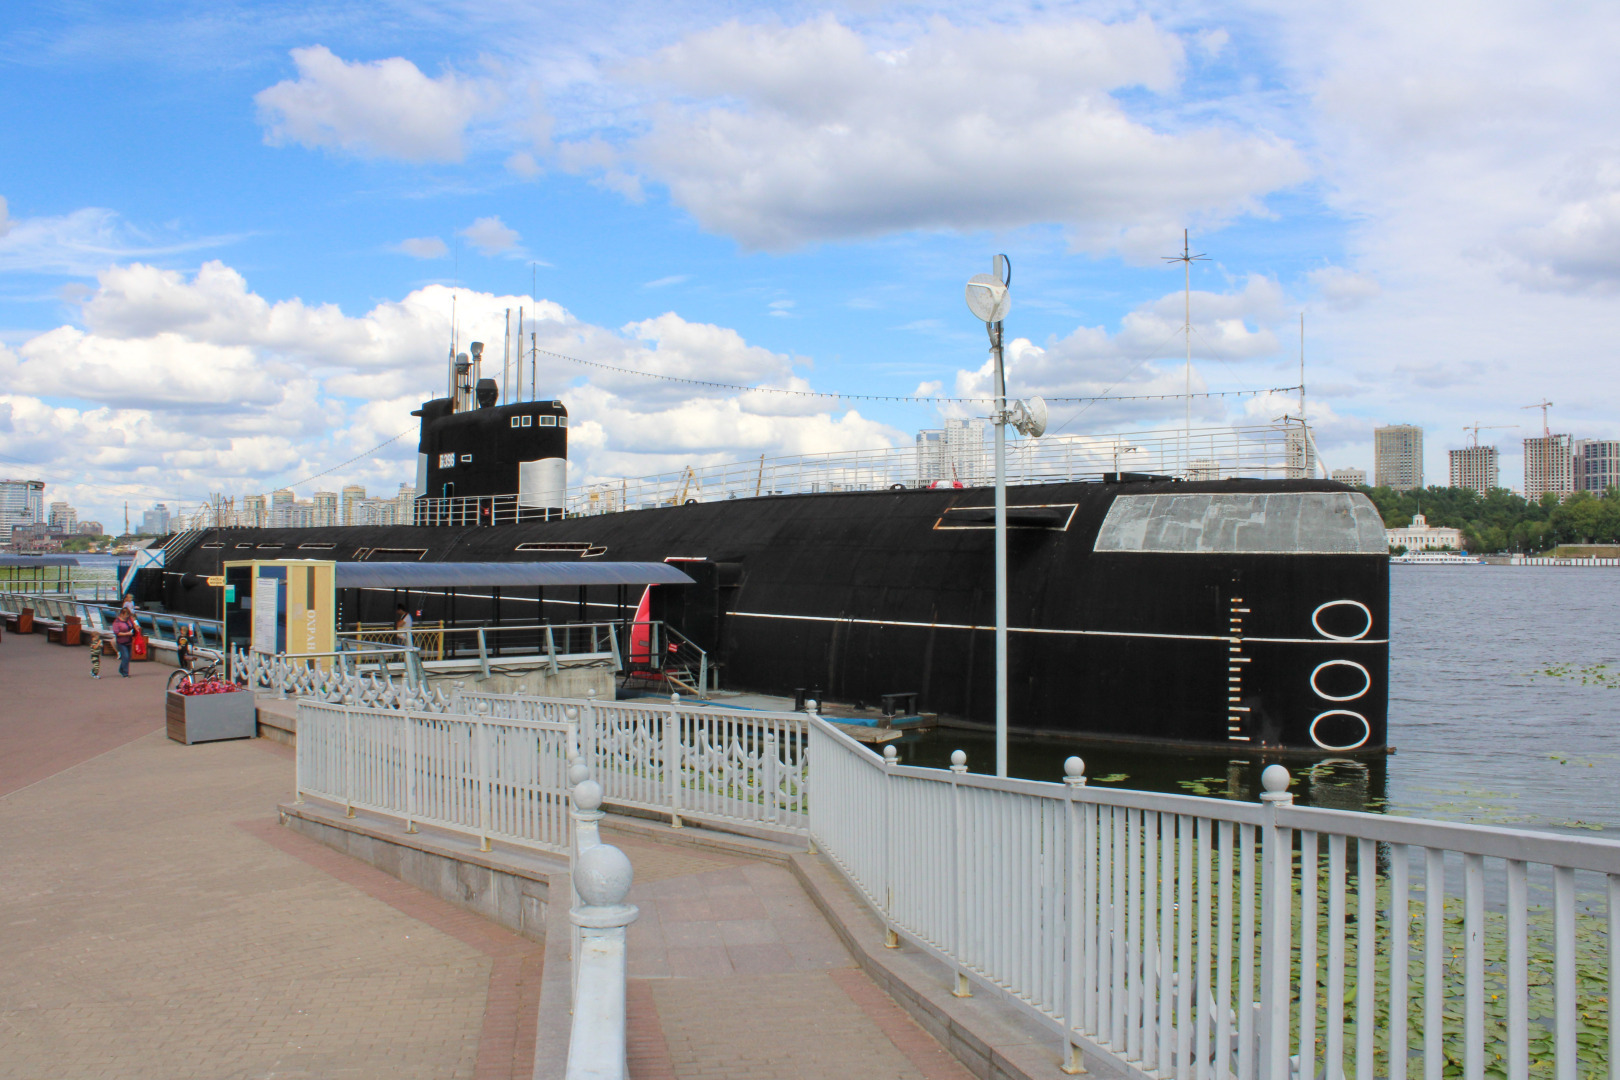 Подводная лодка в москве